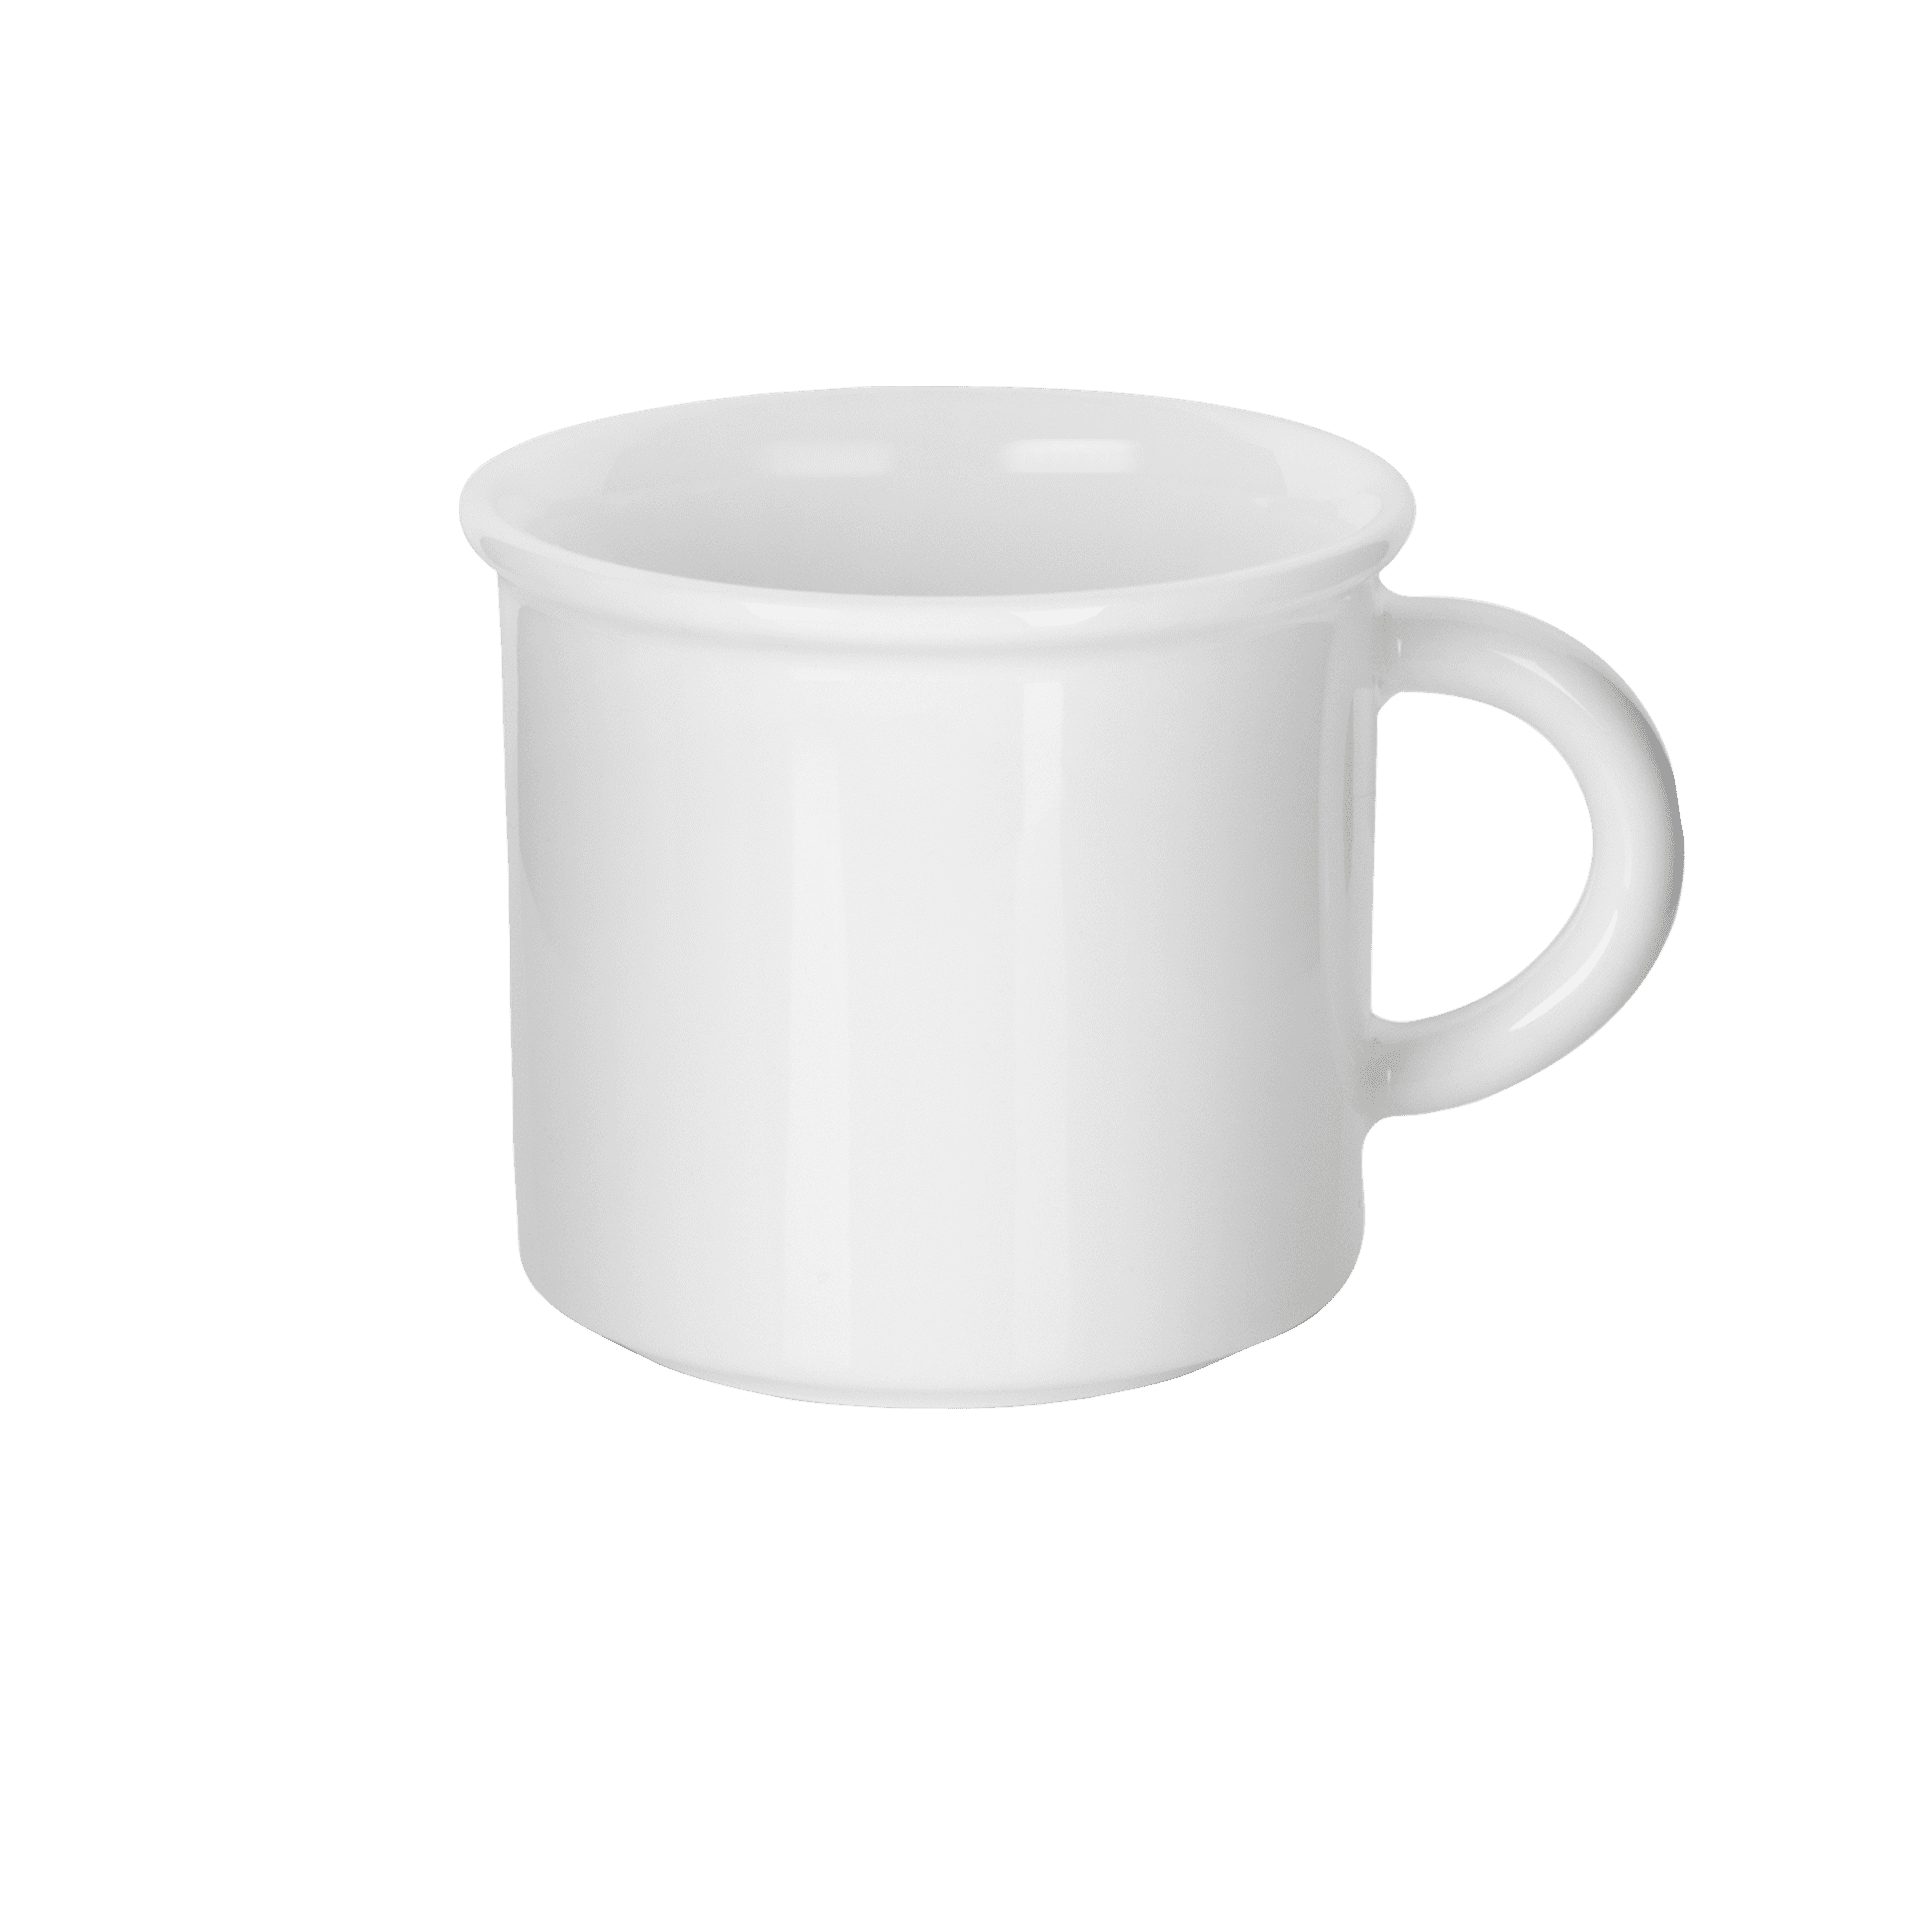 Mahlwerck Manufaktur Tasse Retro Kaffeetasse, Porzellan, 300 ml, spülmaschinenfest, 100 % klimaneutral, Made in EU Pearl White, glänzend | Teetassen